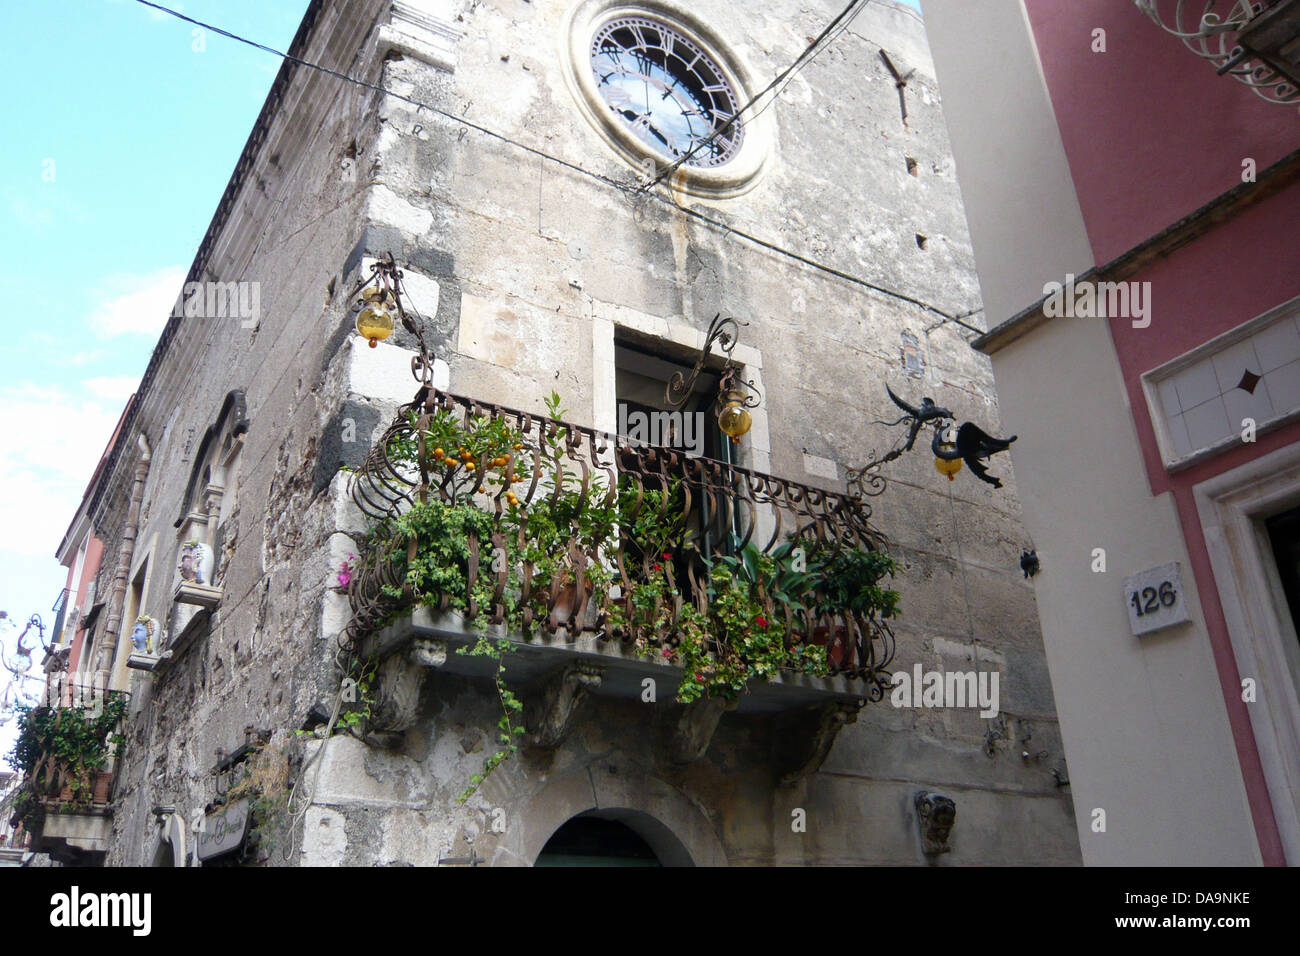 Italy, Europe, Sicily, Taormina, house, home, balcony, plants, Stock Photo